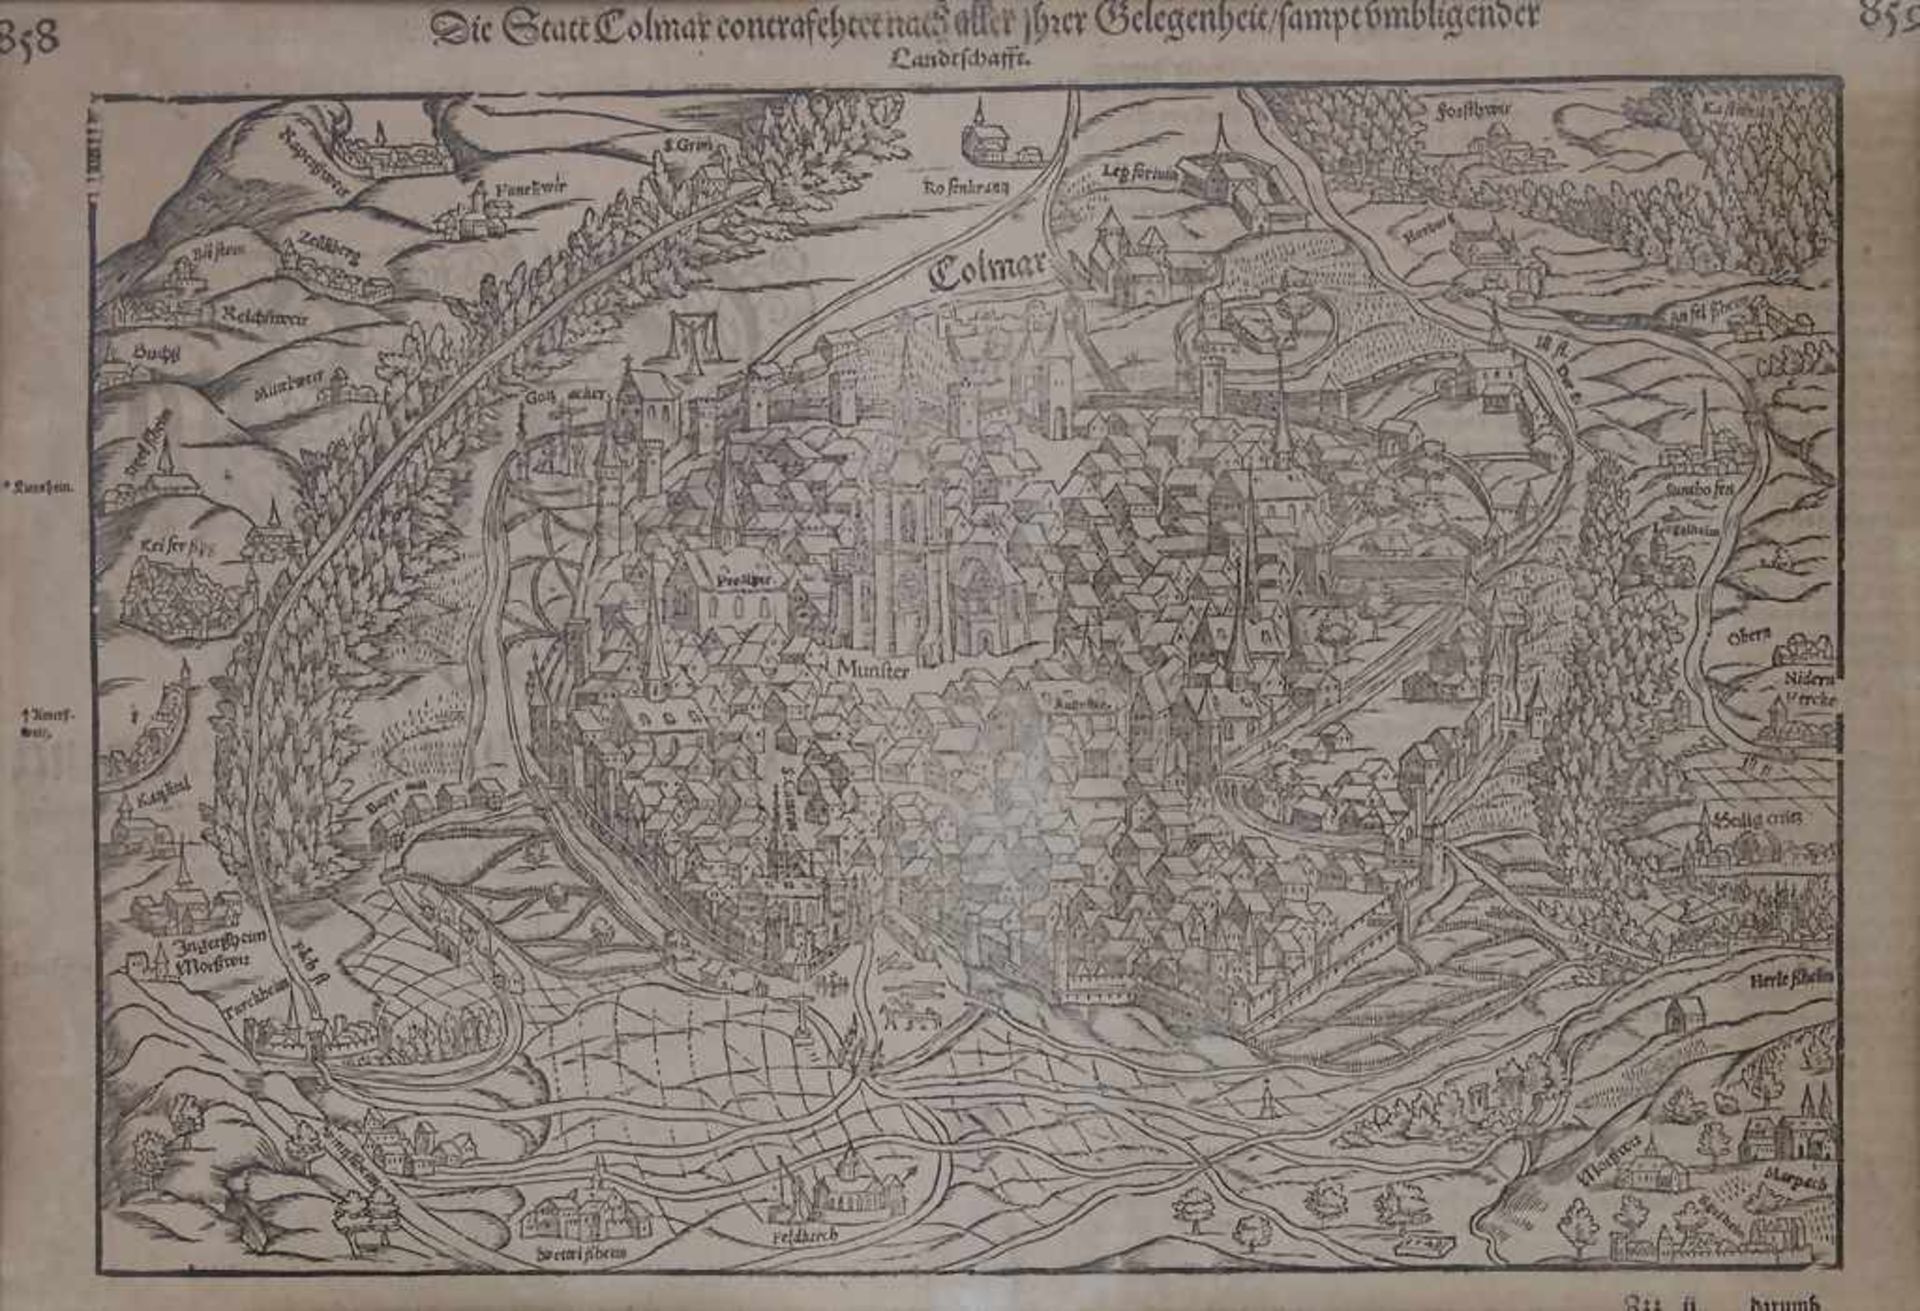 Sebastian Münster (1489-1552), Historische Karte von Colmar / A historic Map of ColmarTitel: 'Die